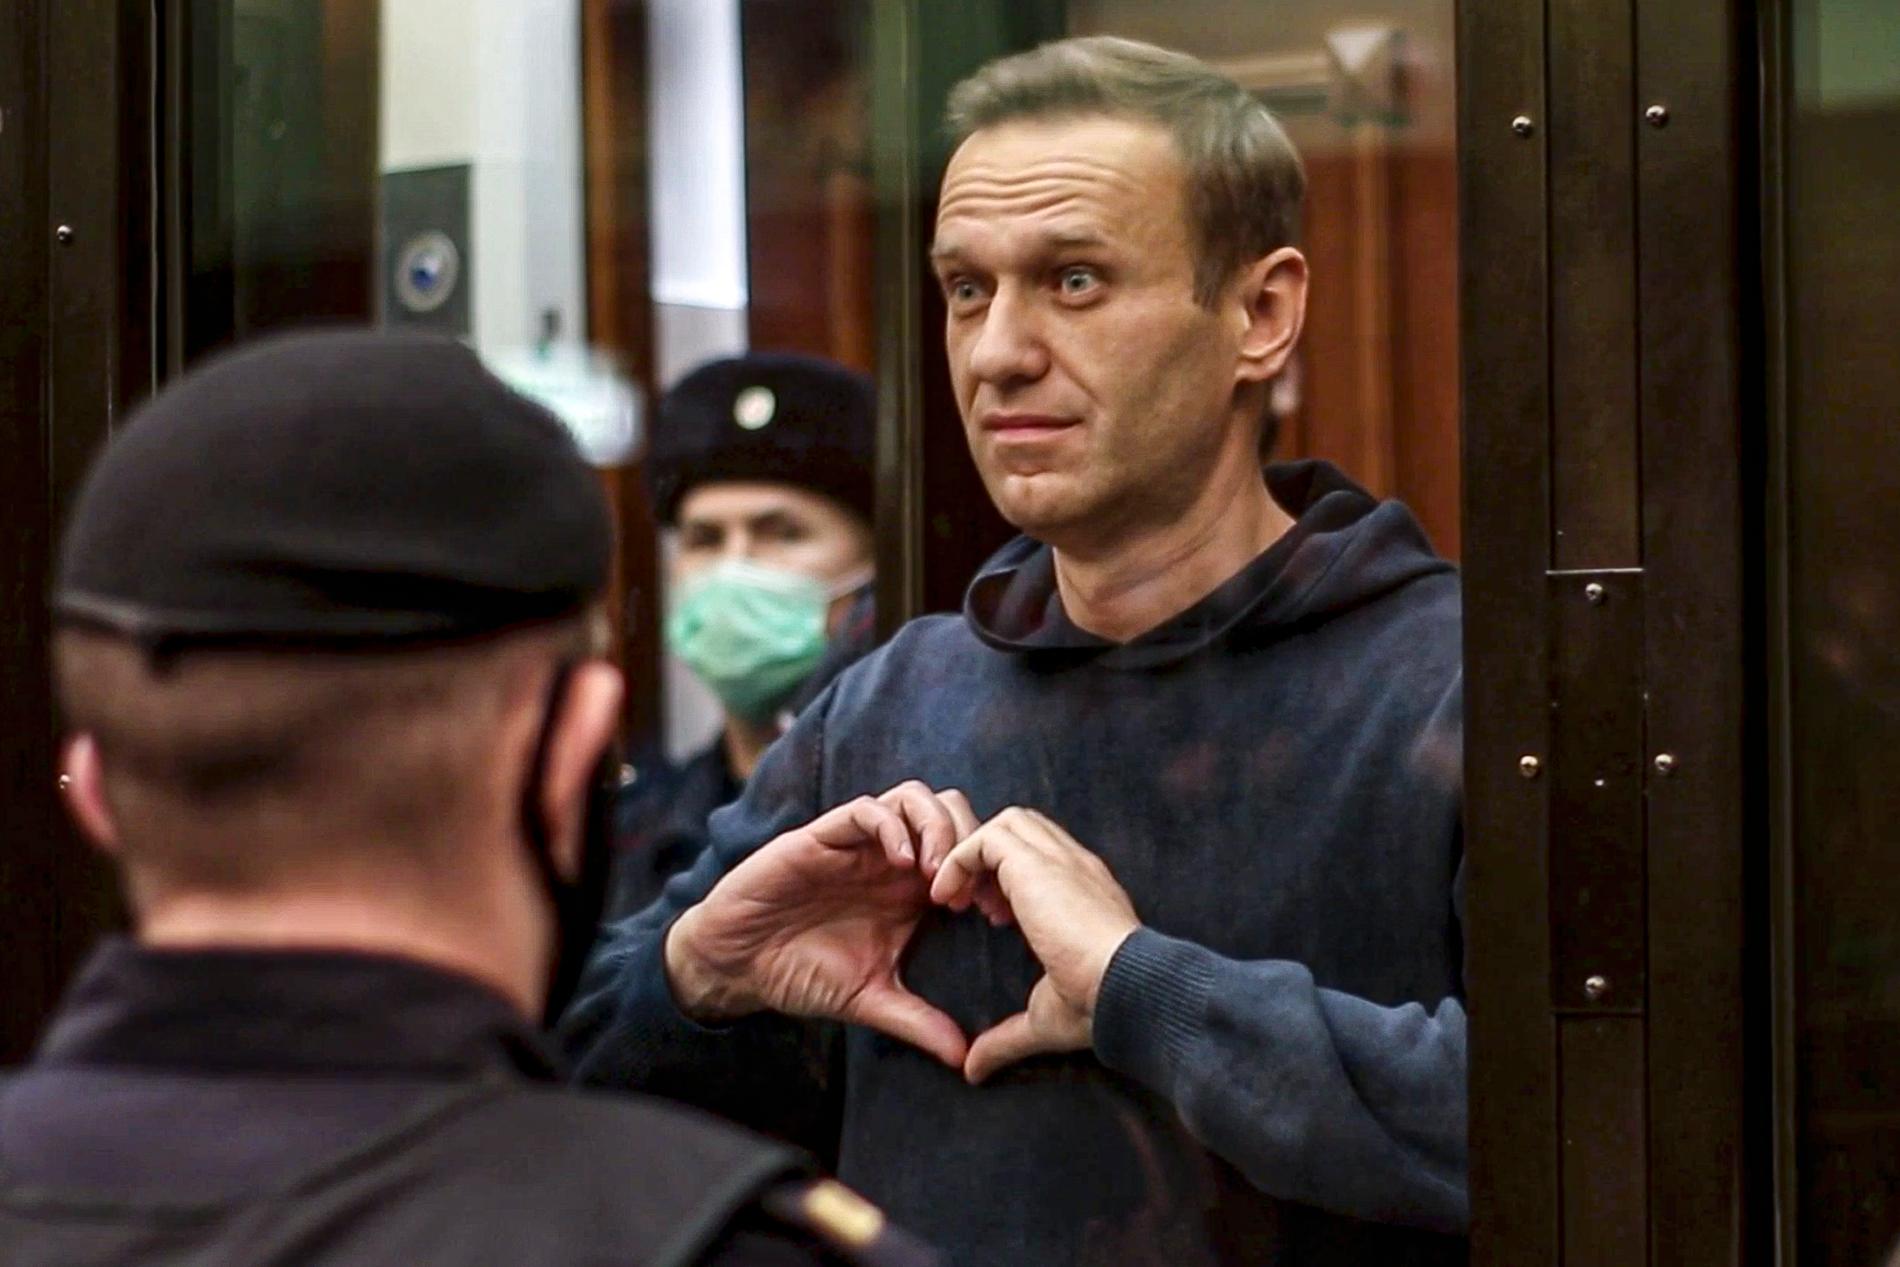  Aleksej Navalnyj i rätten 2021.